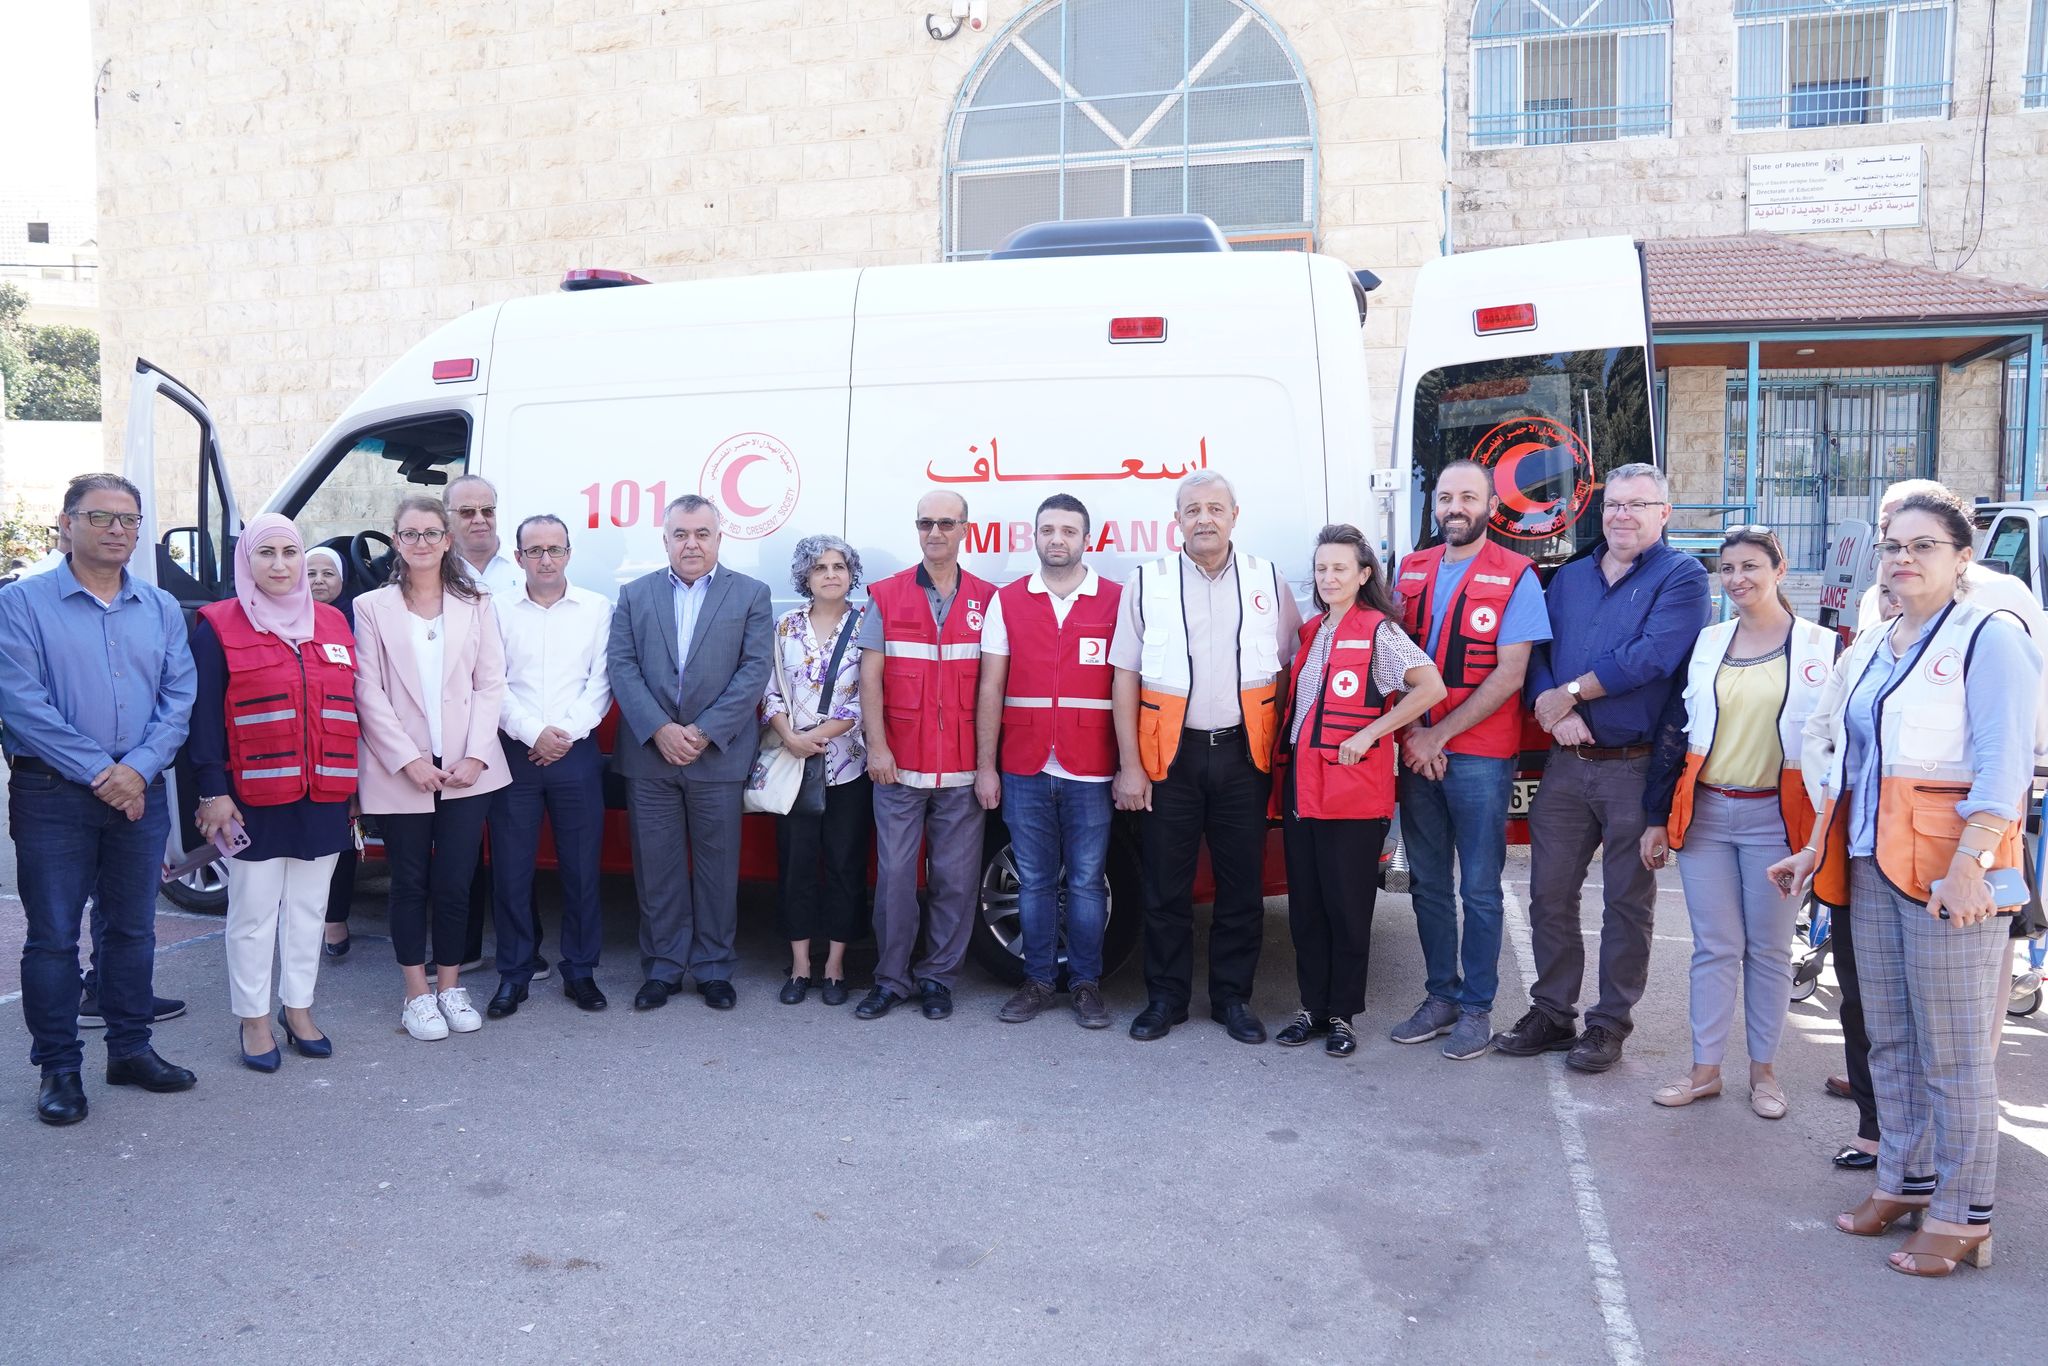 بدعم من الجمعيات الوطنية للصليب الأحمر والهلال الأحمر ومؤسسات شريكة أخرى - الهلال الأحمر الفلسطيني يتسلم  21 سيارة إسعاف حديثة مجهزة بالمعدات الطبية لتجديد أسطولها الإسعافي